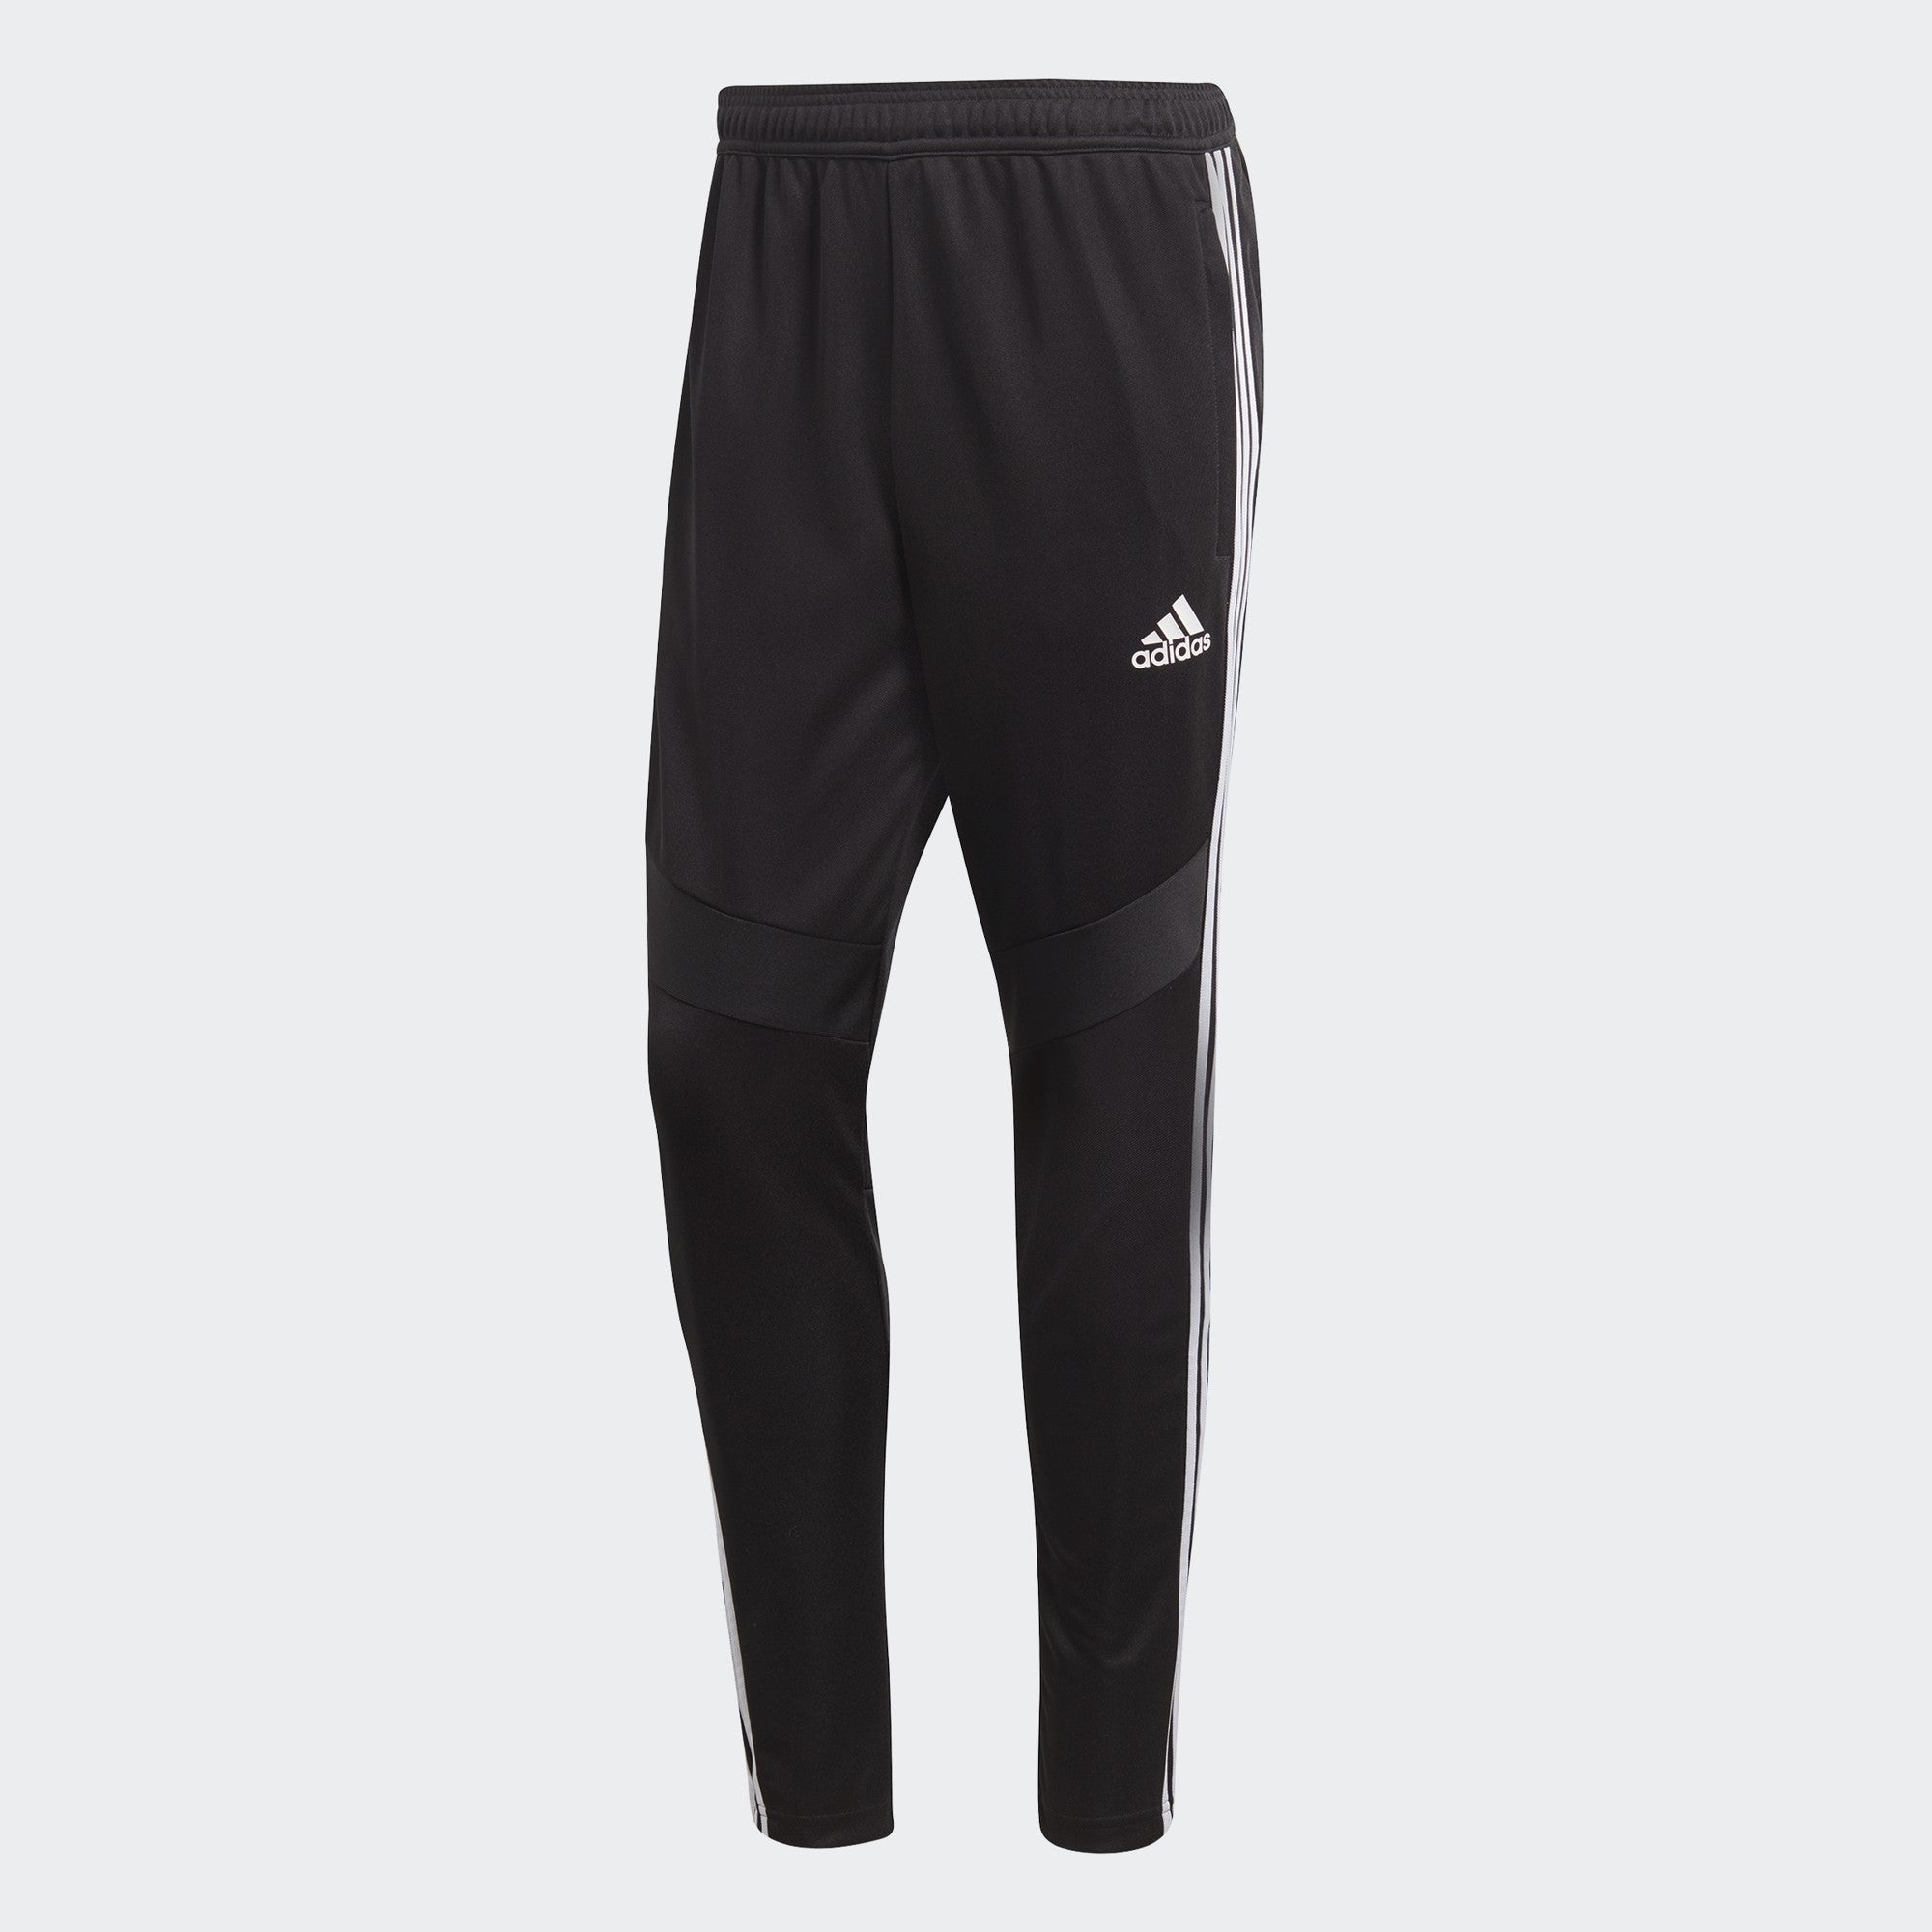 adidas Tiro Soccer Pants Men's Black/White